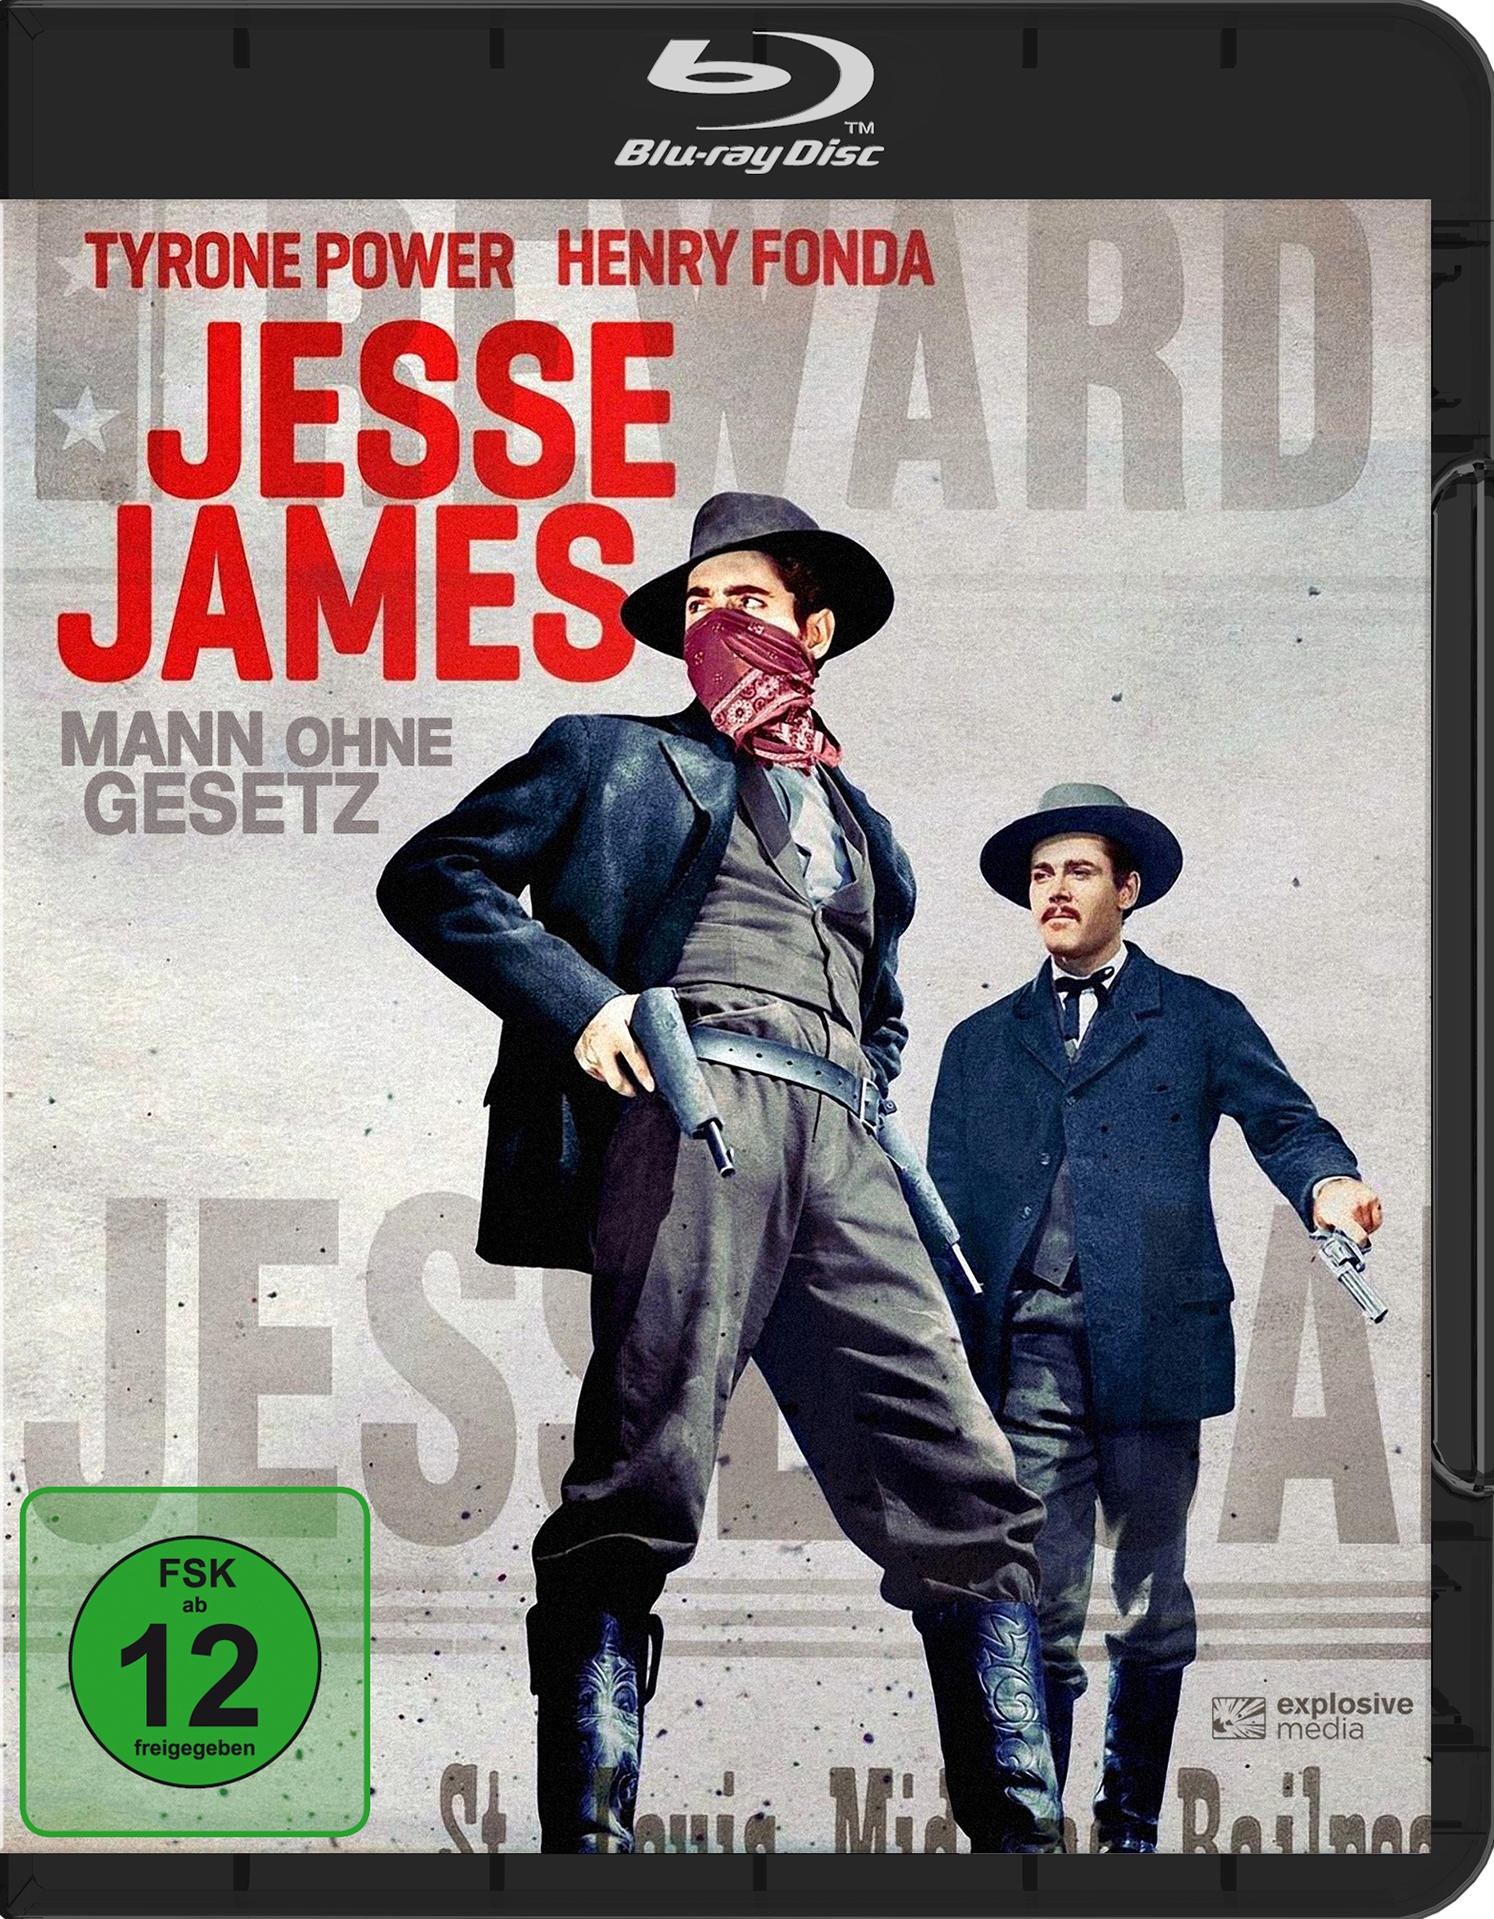 ohne - Blu-ray James Mann Jesse Gesetz